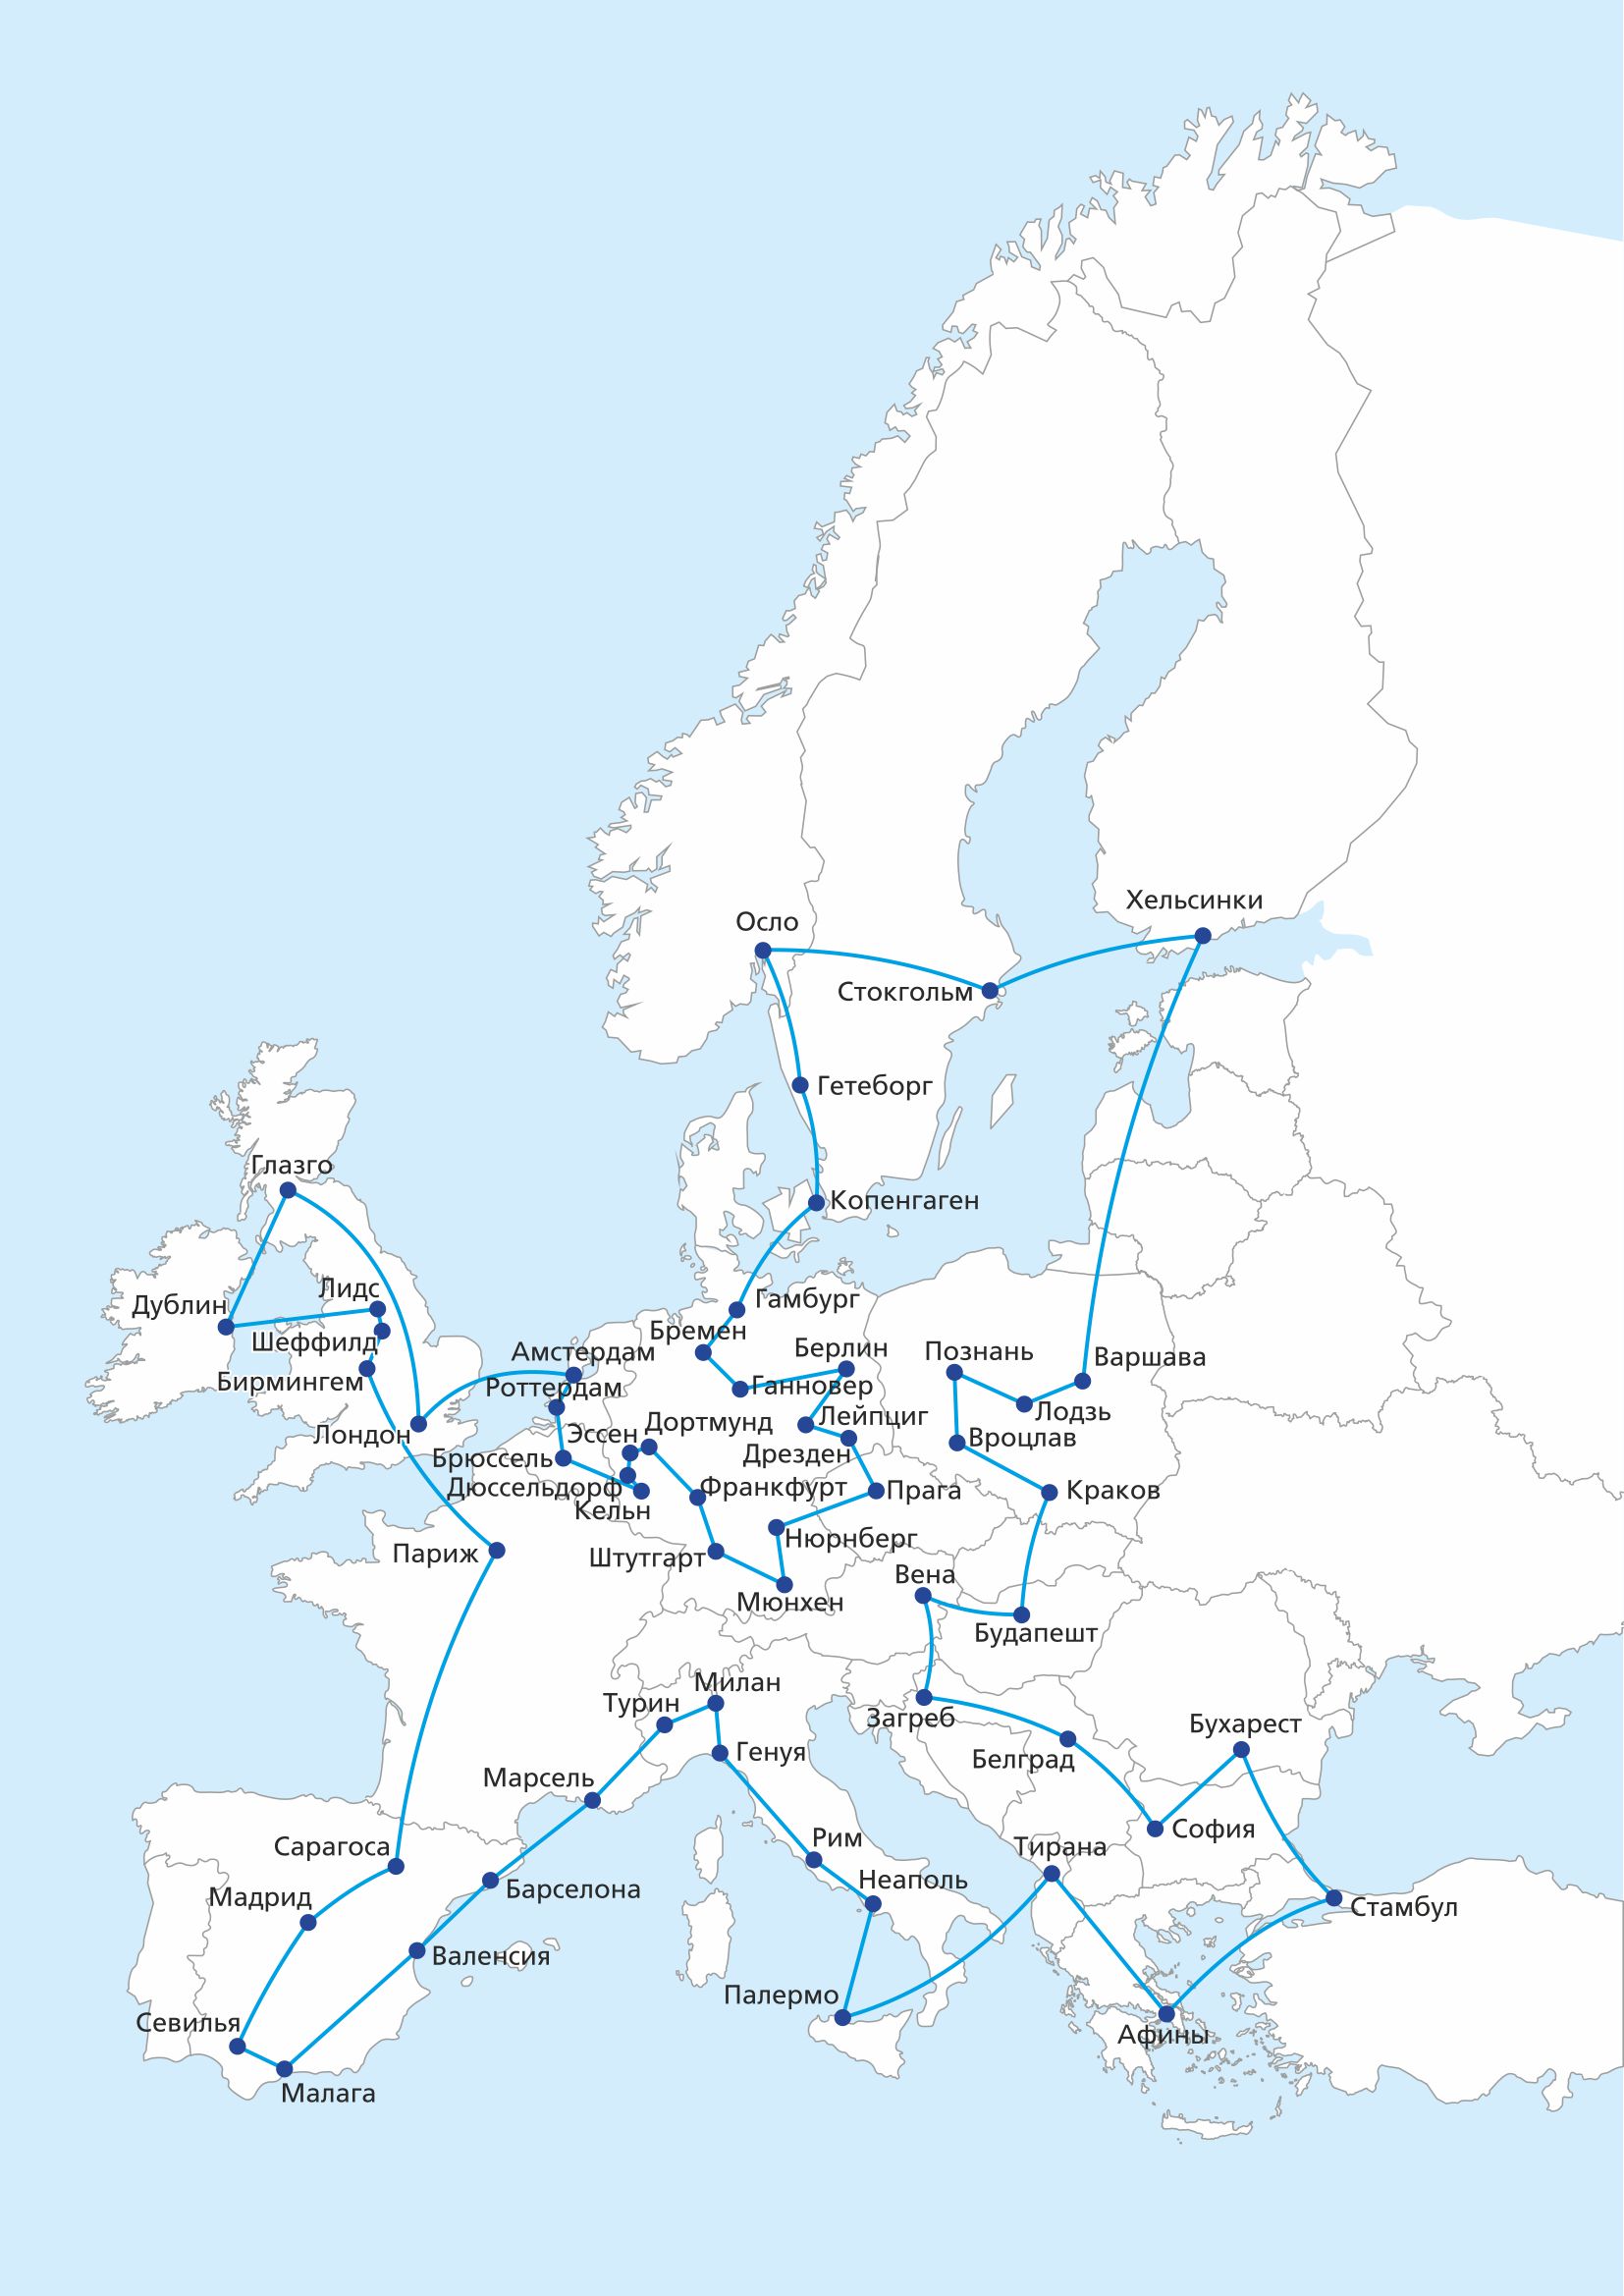 Оптимальный маршрут по Европе